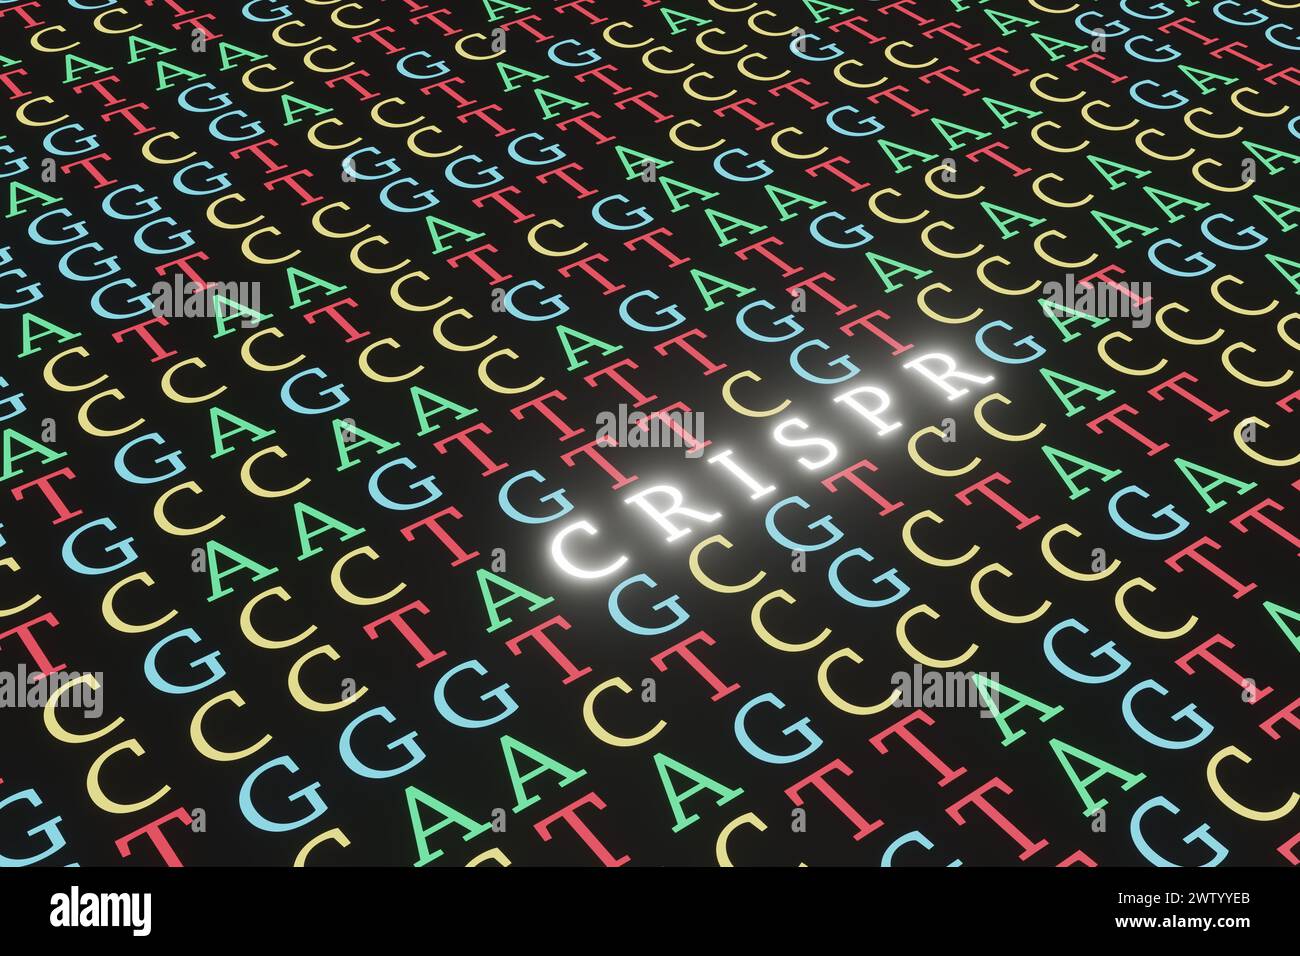 Lettere colorate di ACGT riempiono completamente l'intero schermo nero con sezione modificata in alfabeto bianco brillante CRISPR. Modifica genoma della sequenza del DNA Foto Stock